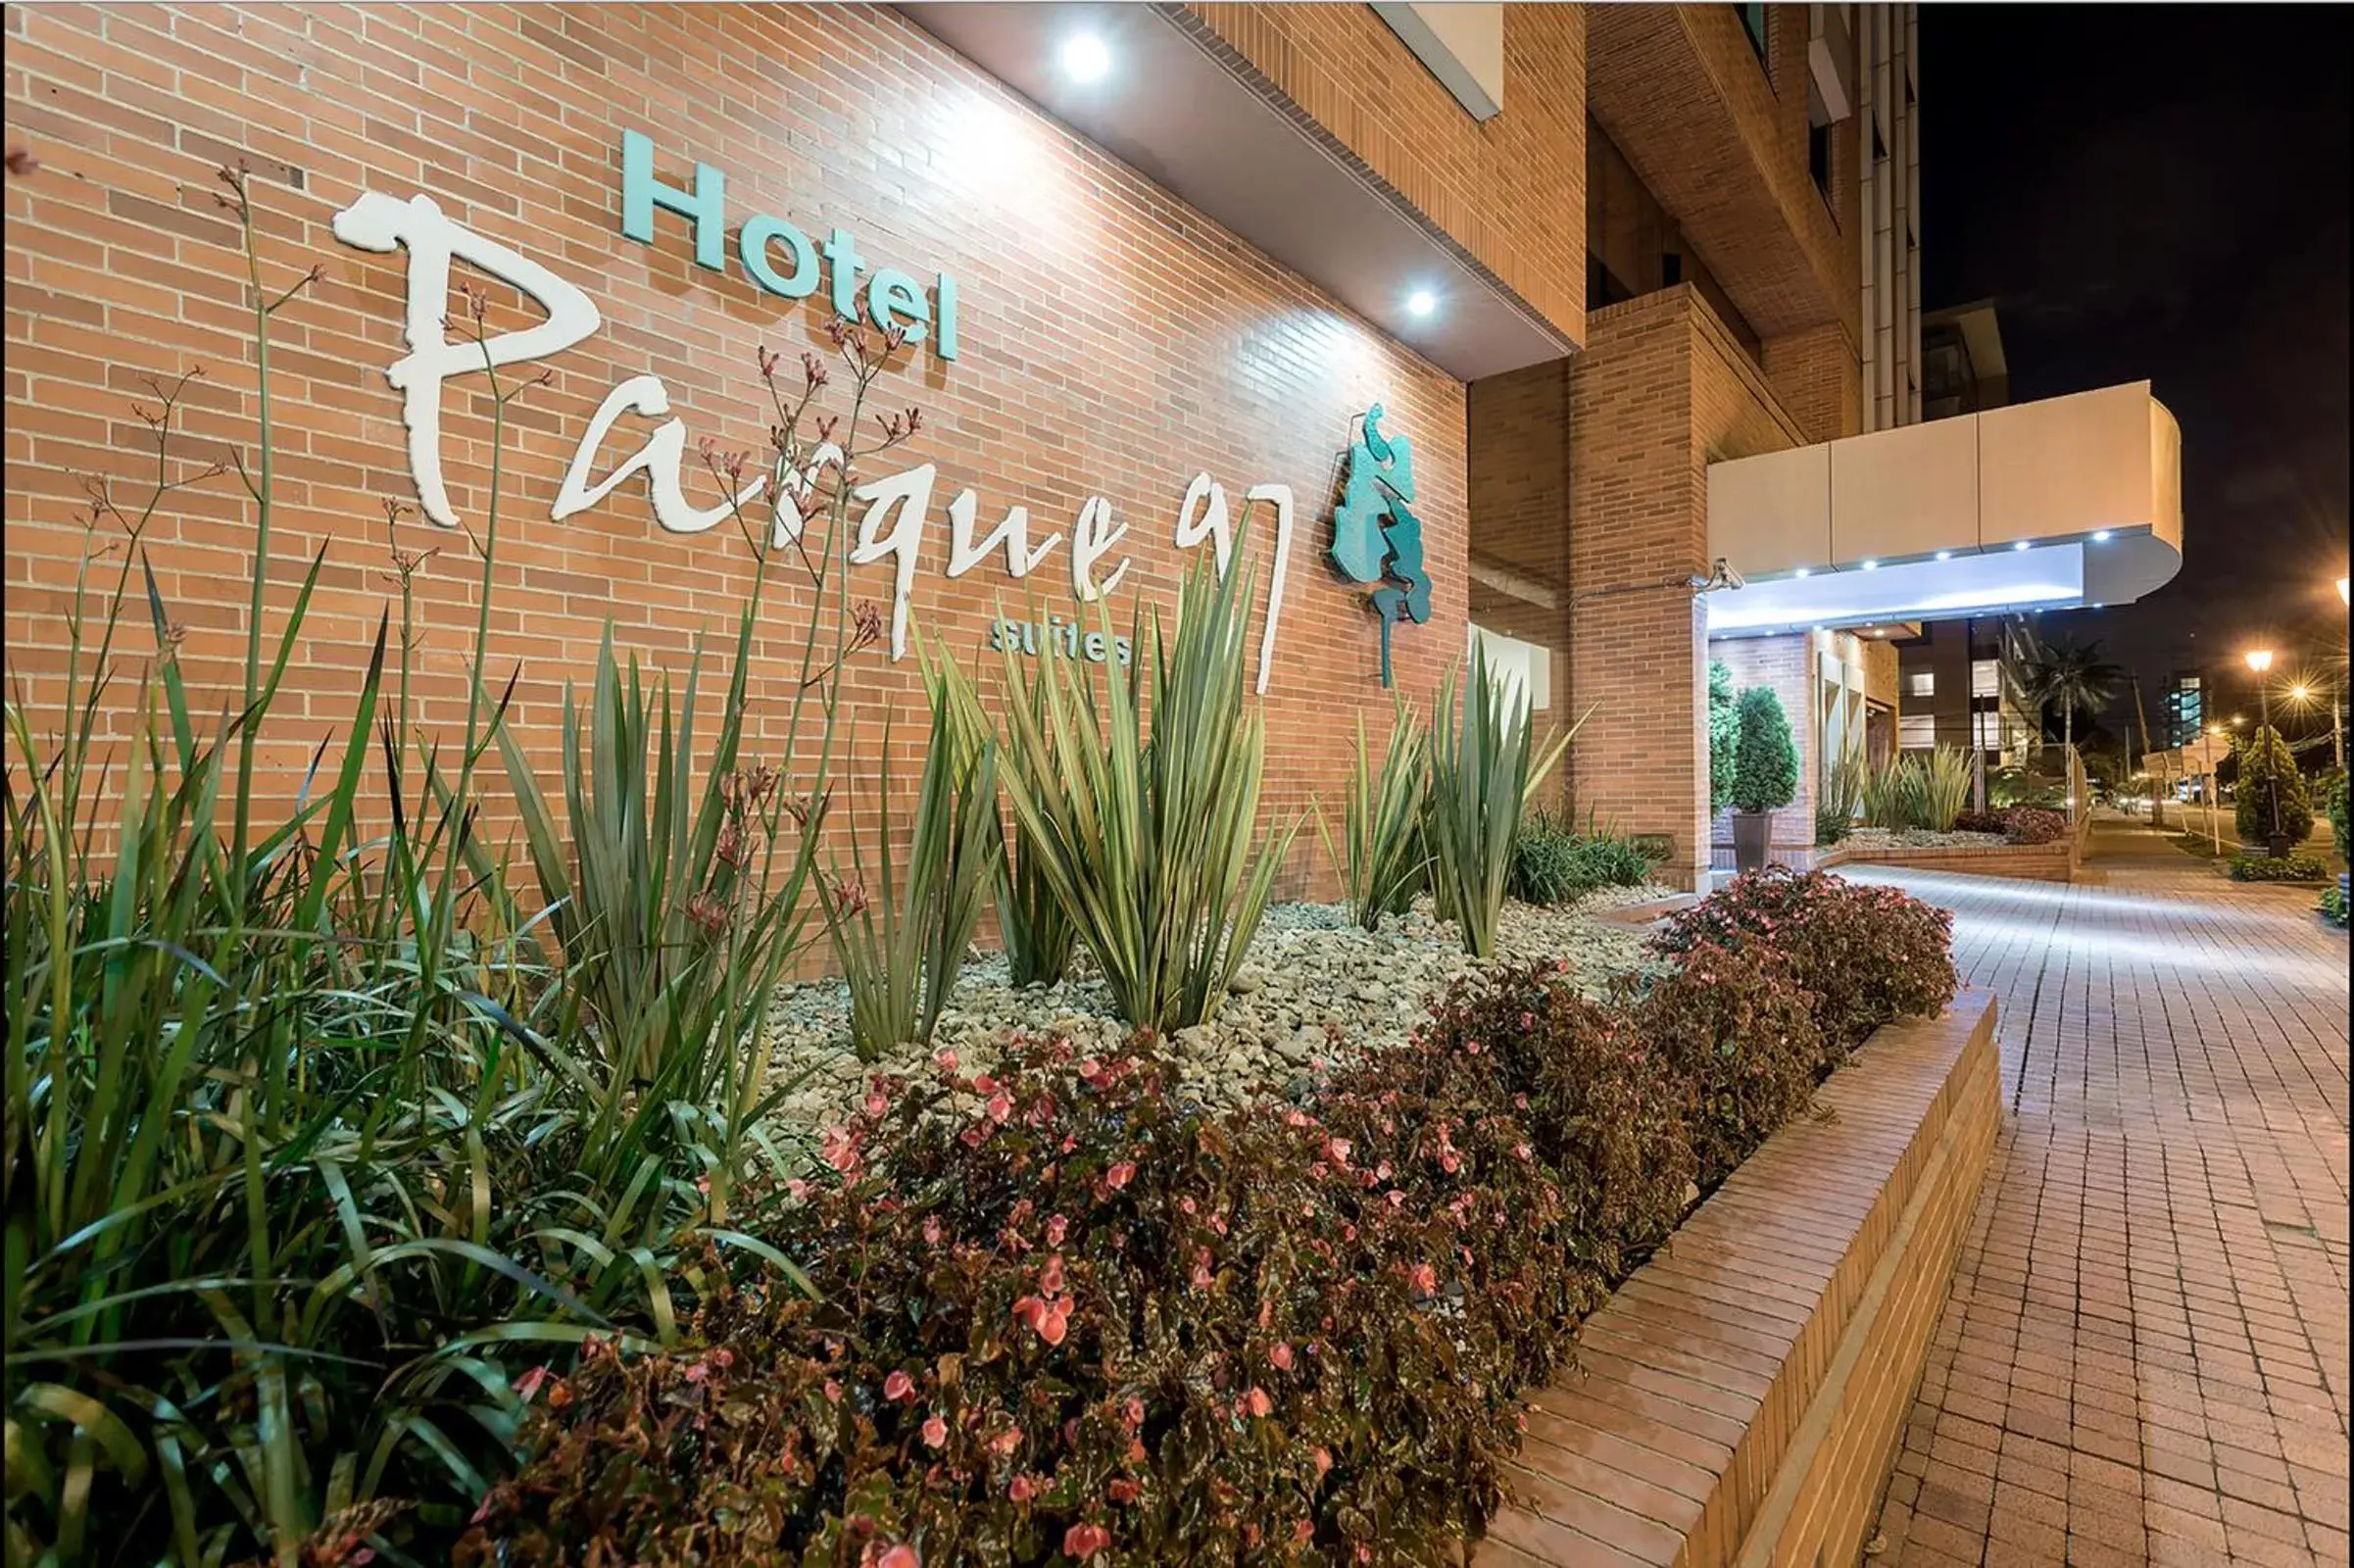 Facade/entrance in Hotel Parque 97 Suites